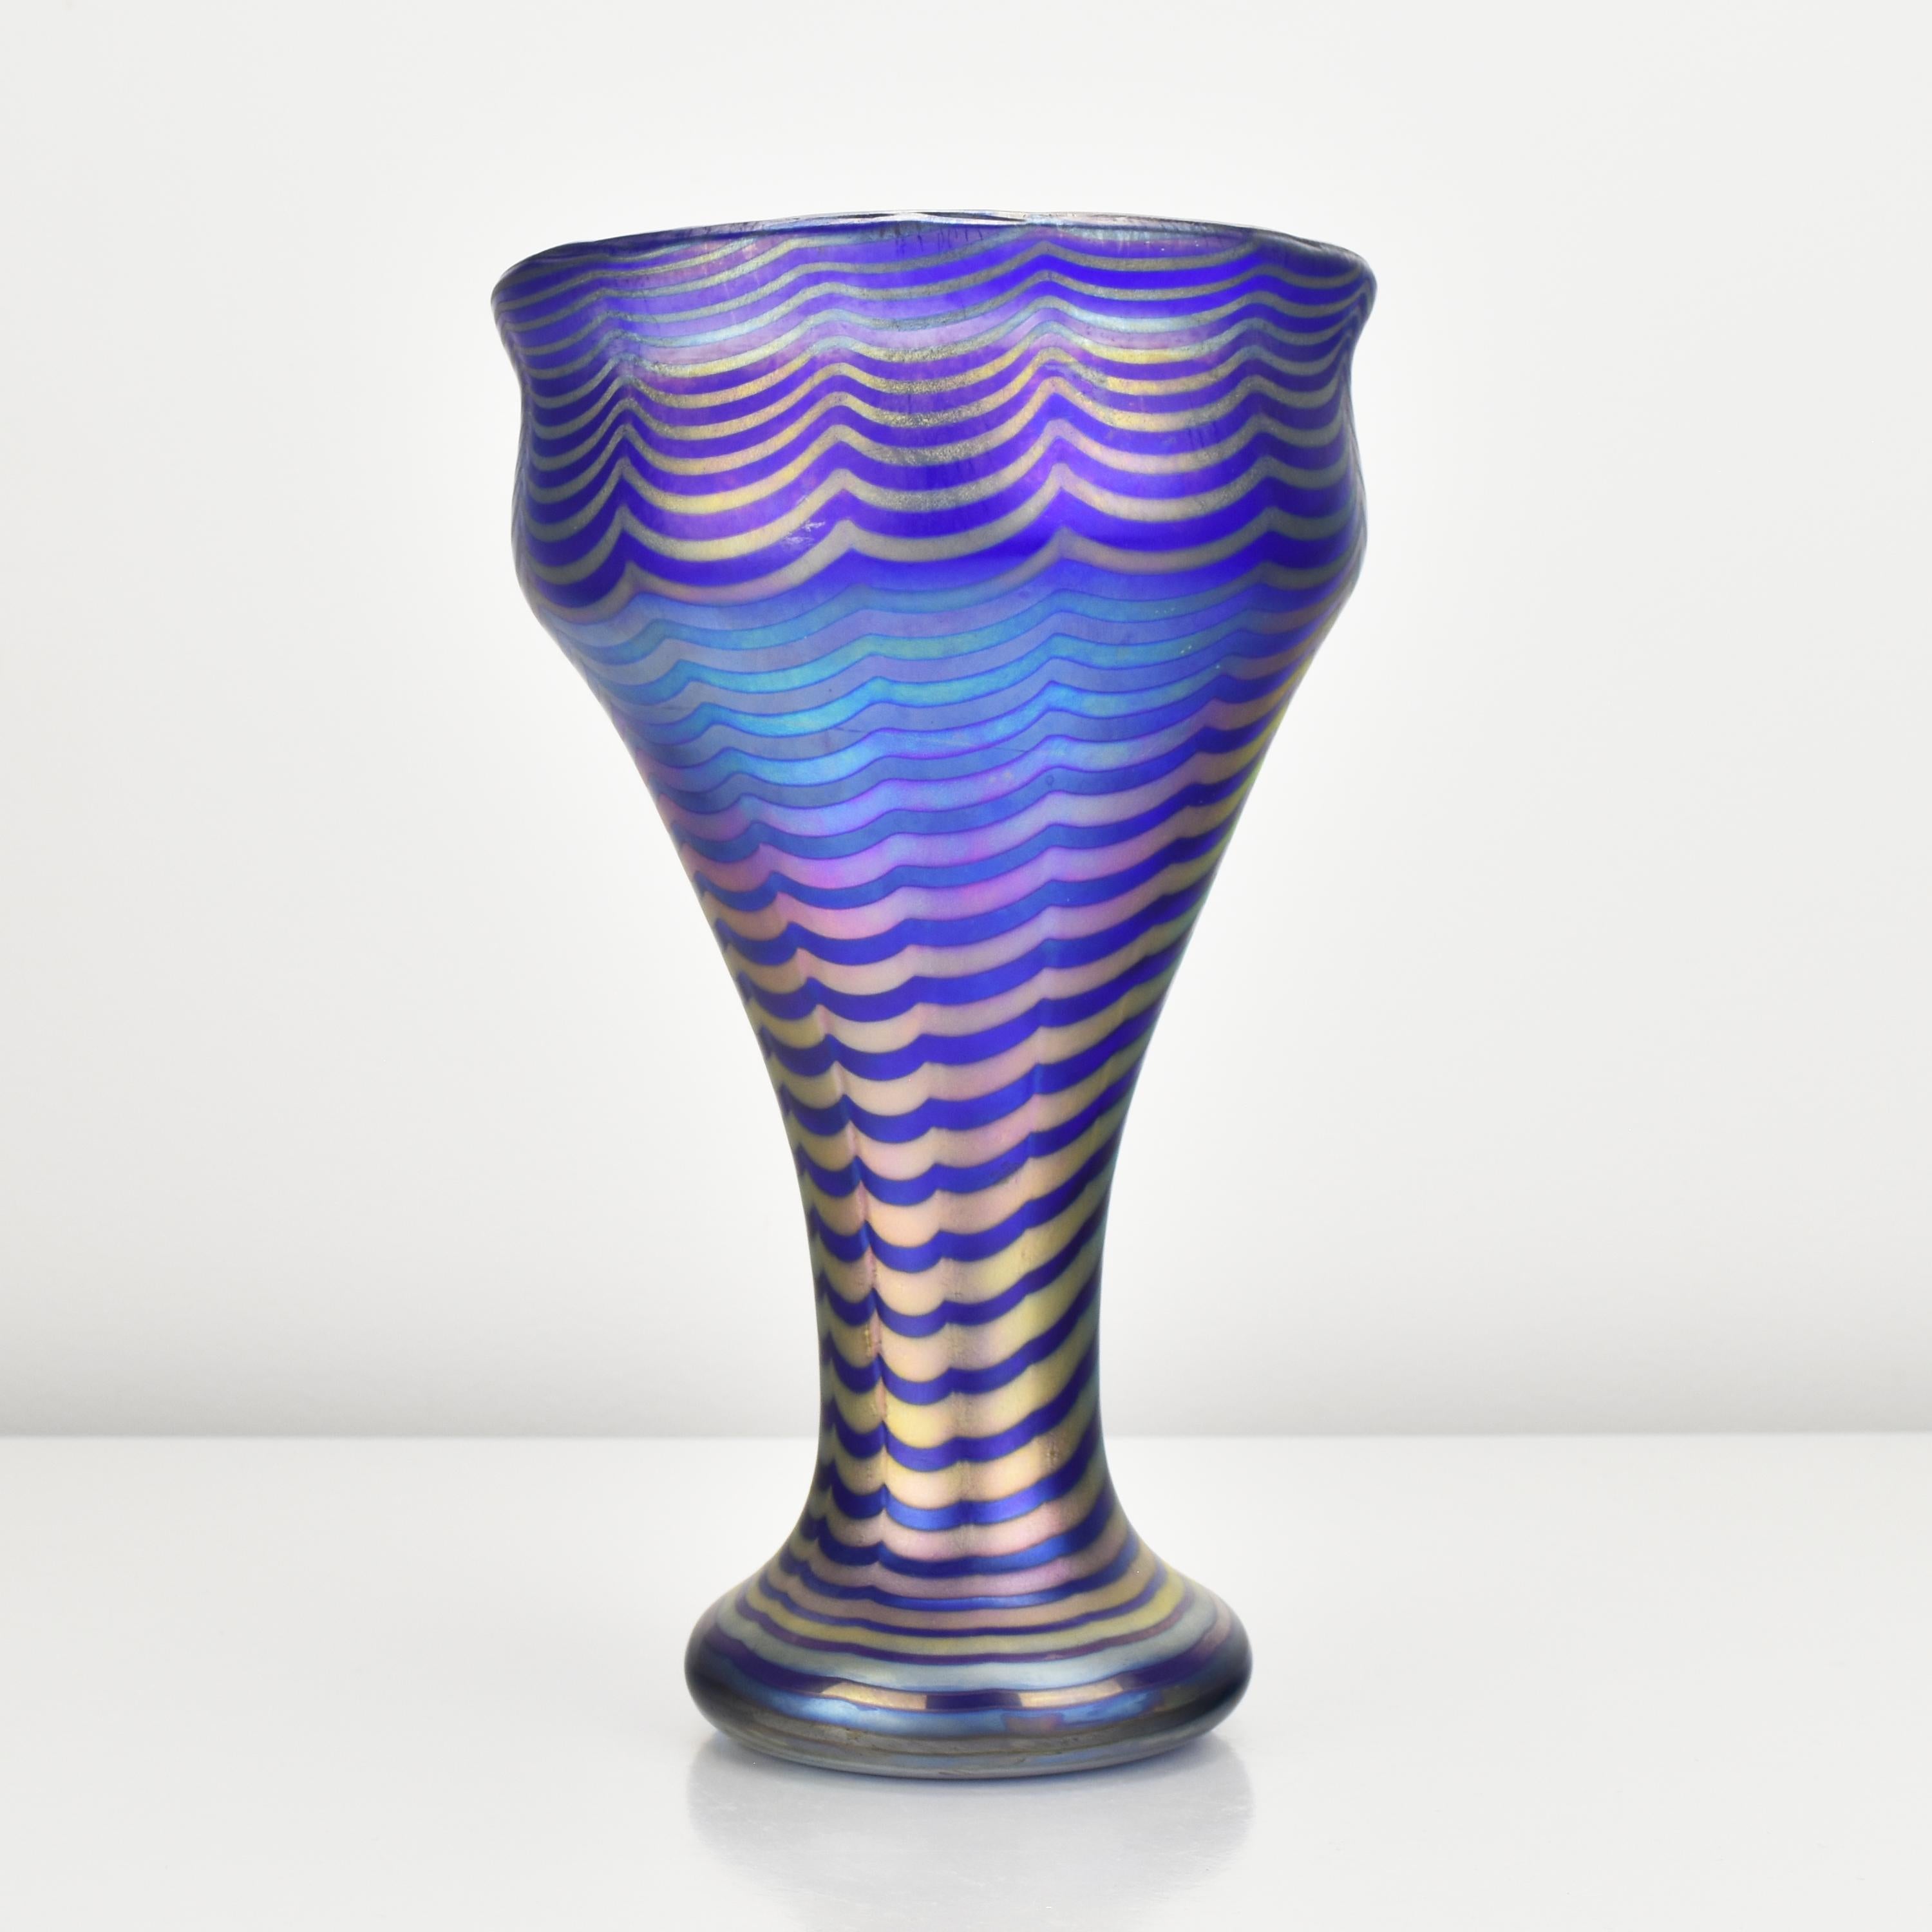 Late 19th Century Loetz Vase Art Nouveau Secessionist Art Glass Phaenomen 6893 Antique Lötz For Sale